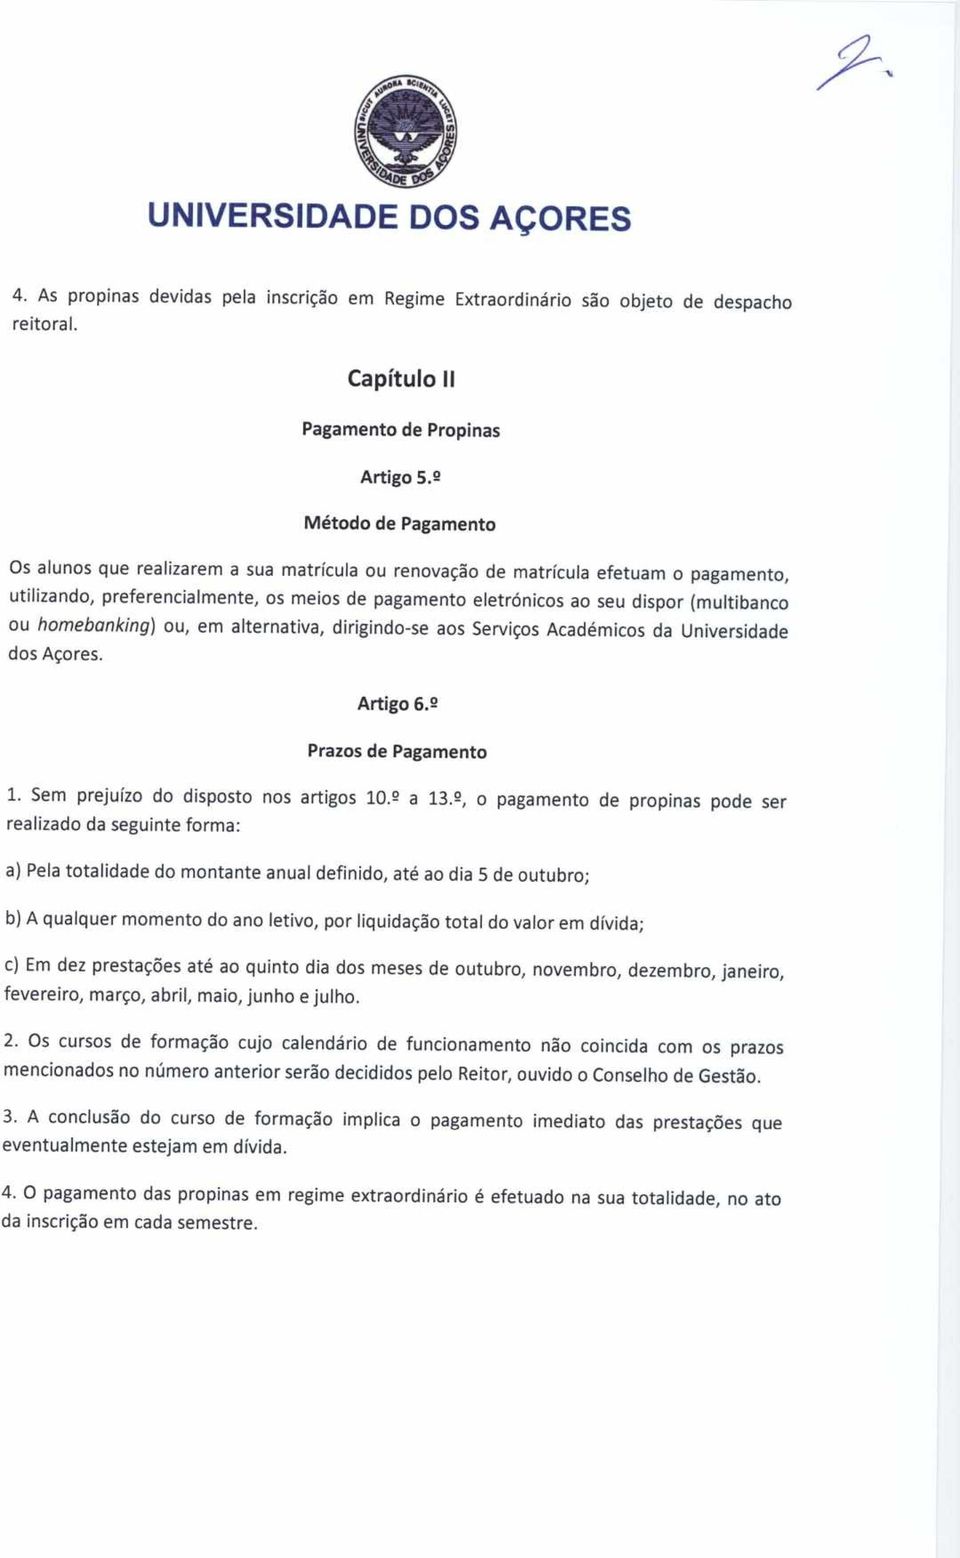 (multibanco ou homebanking) ou, em alternativa, dirigindo-se aos Serviços Académicos da Universidade dos Açores. Artigo 6. 2 Prazos de Pagamento 1. Sem prejuízo do disposto nos artigos 10. 2 a 13.